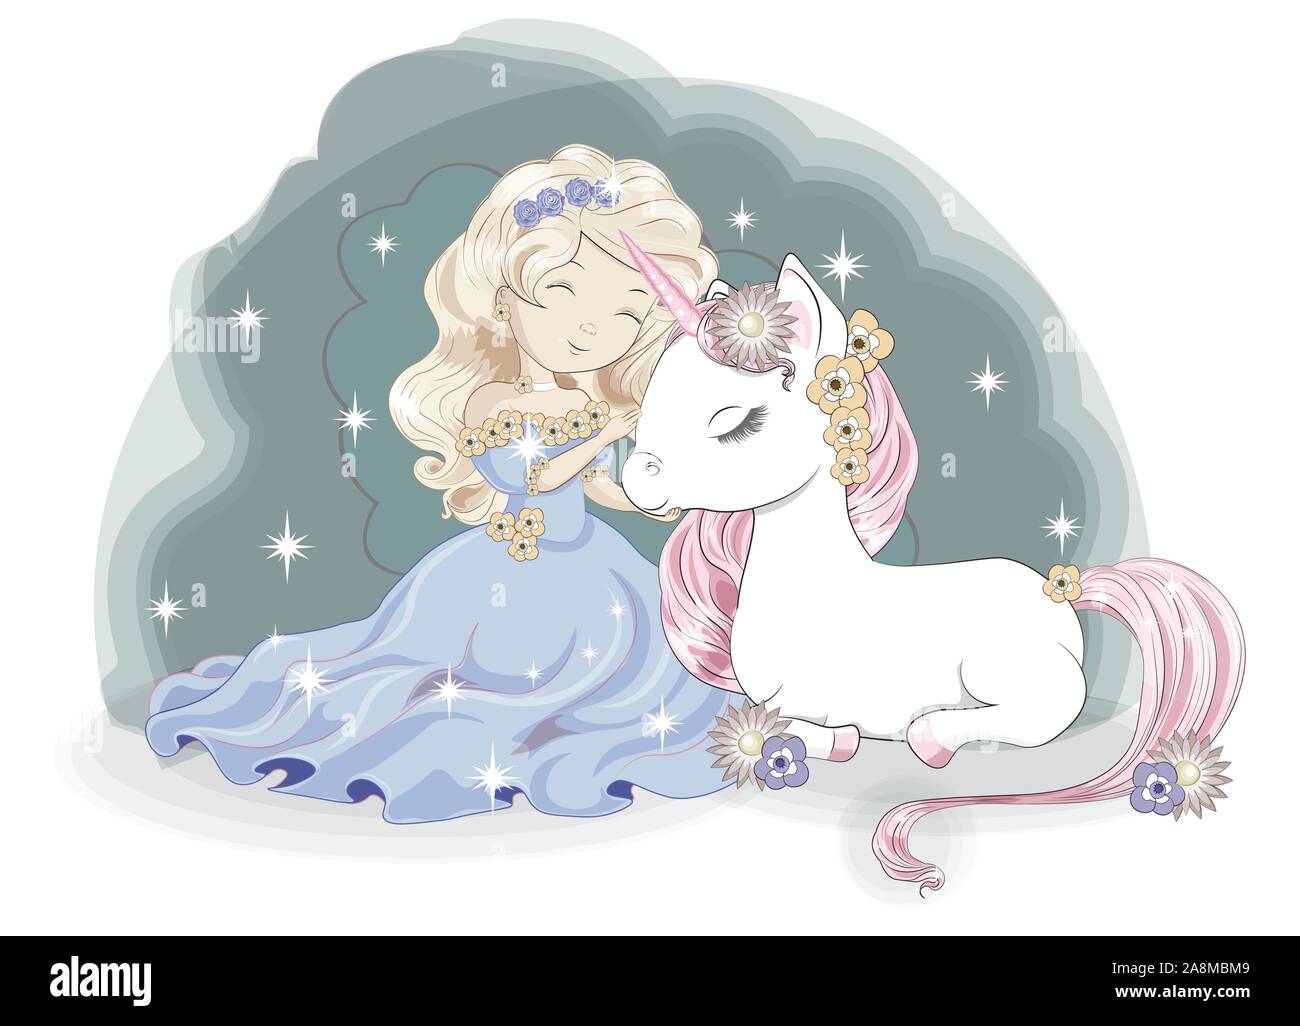 Prinzessin Mädchen blond und Magic White unicorn, im Blumengarten. Bild in der Hand Zeichnung Stil, für t-shirt fashion Print Design, Gruß birthd Stock Vektor